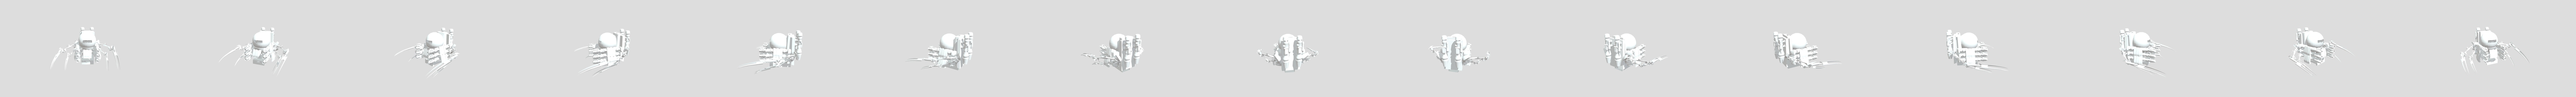 Gman 3D models - Sketchfab